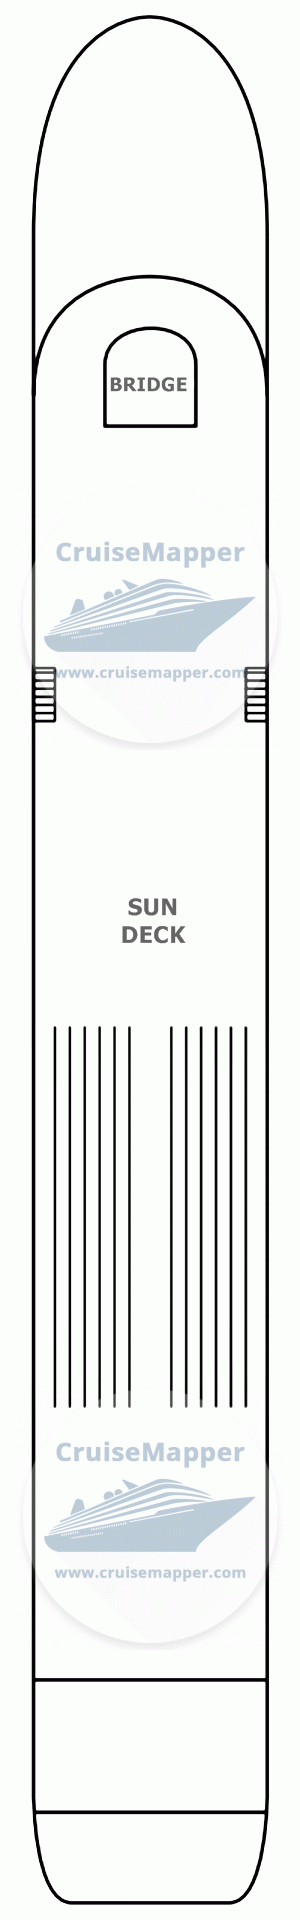 MS Verdi Deck 04 - Sun